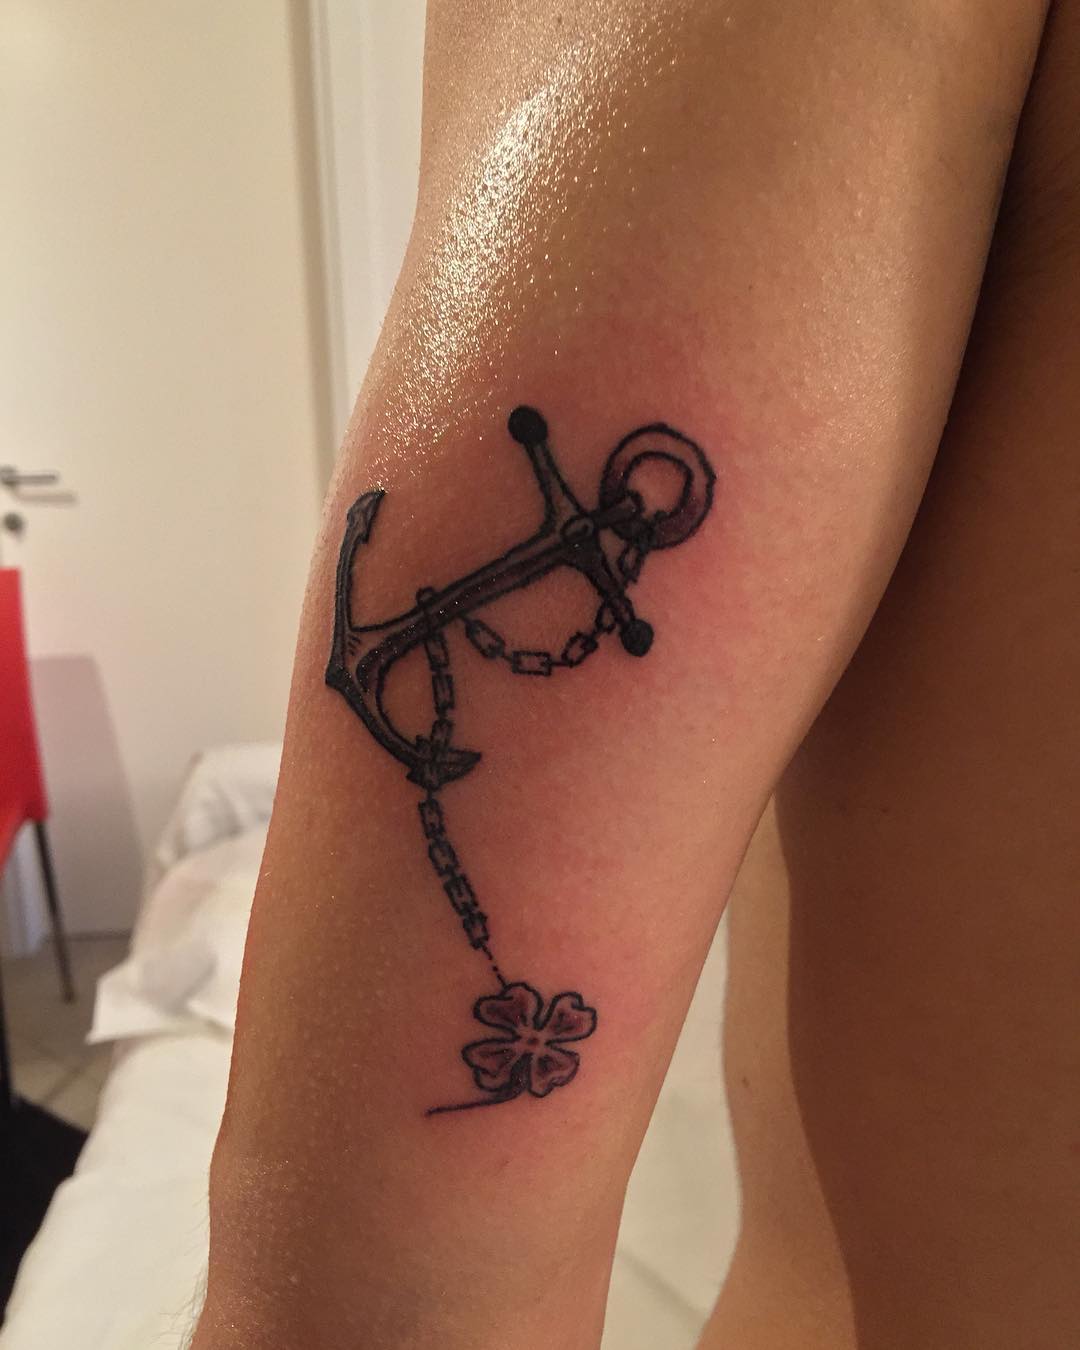 Beautiful faith tattoo idea